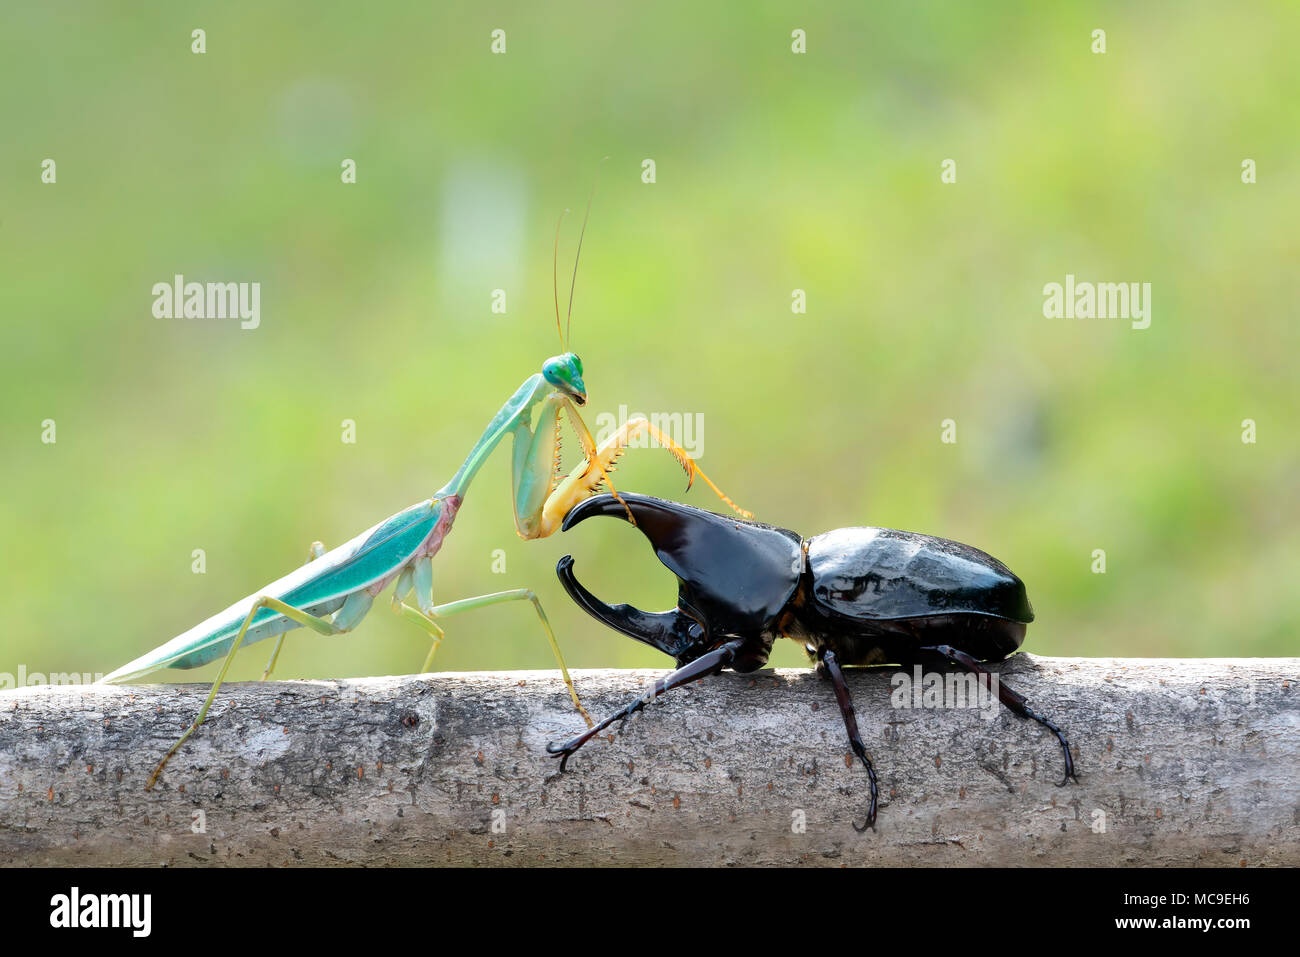 green praying mantis with  rhinoceros beetles. Stock Photo